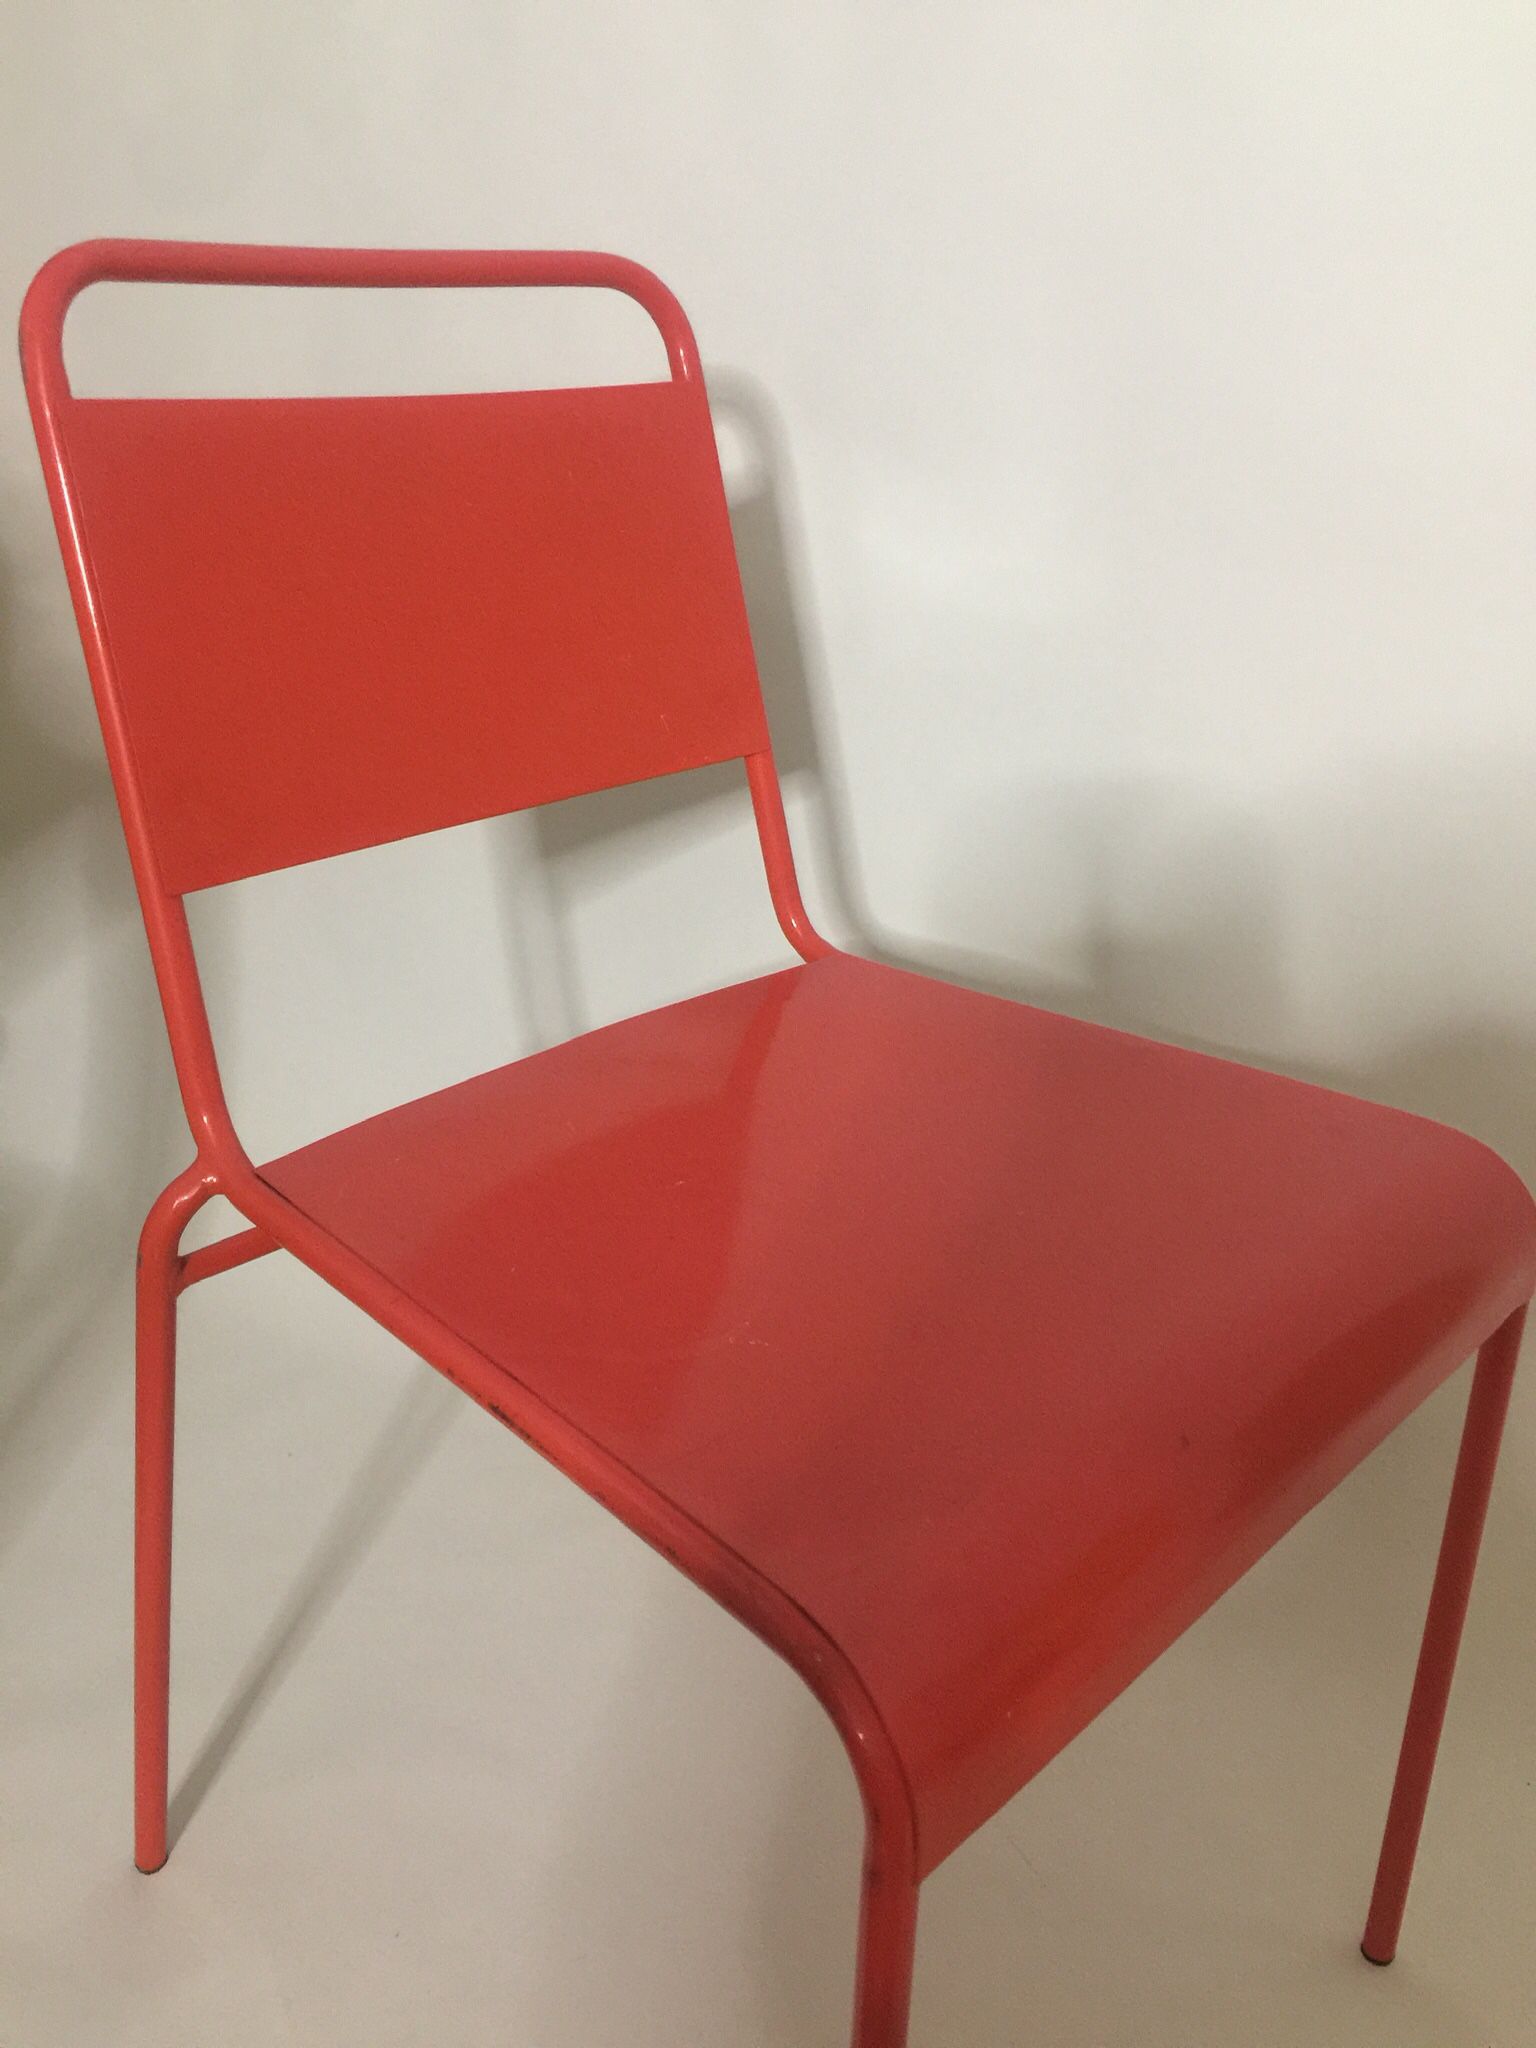 F R E E  / Orange Metal Chair